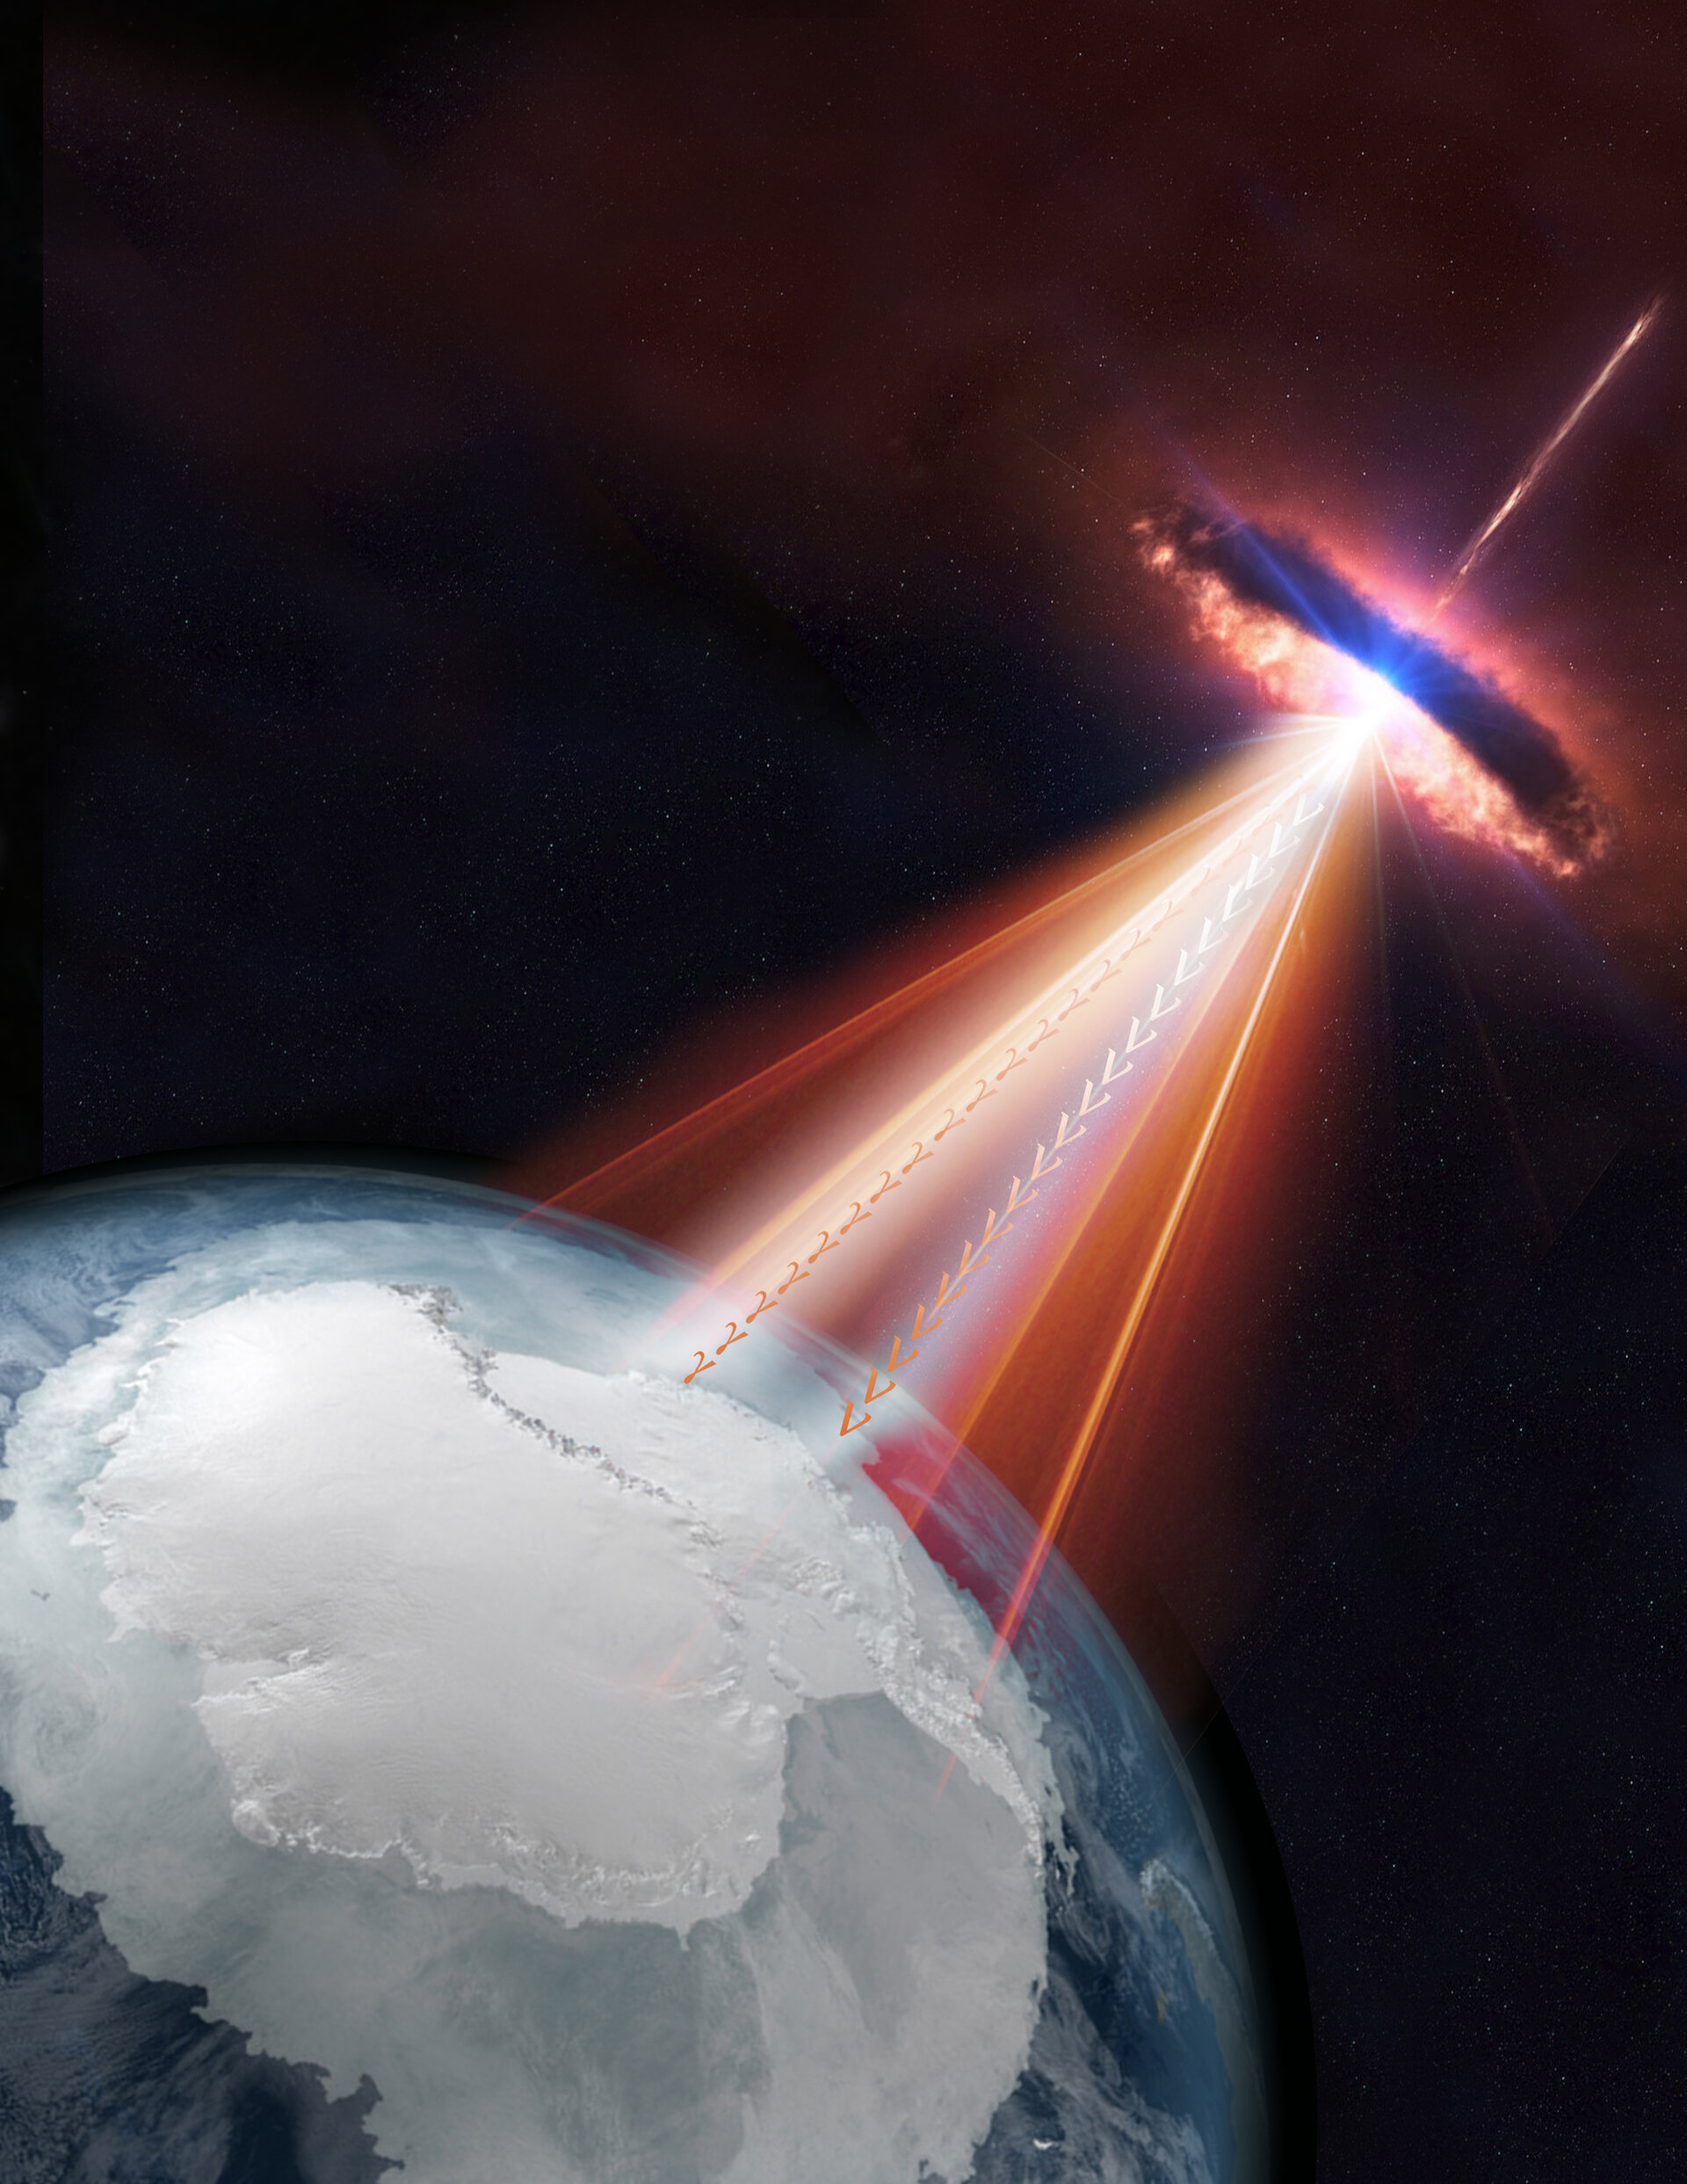 Un blazar dispara neutrinos y rayos gamma hacia la Tierra